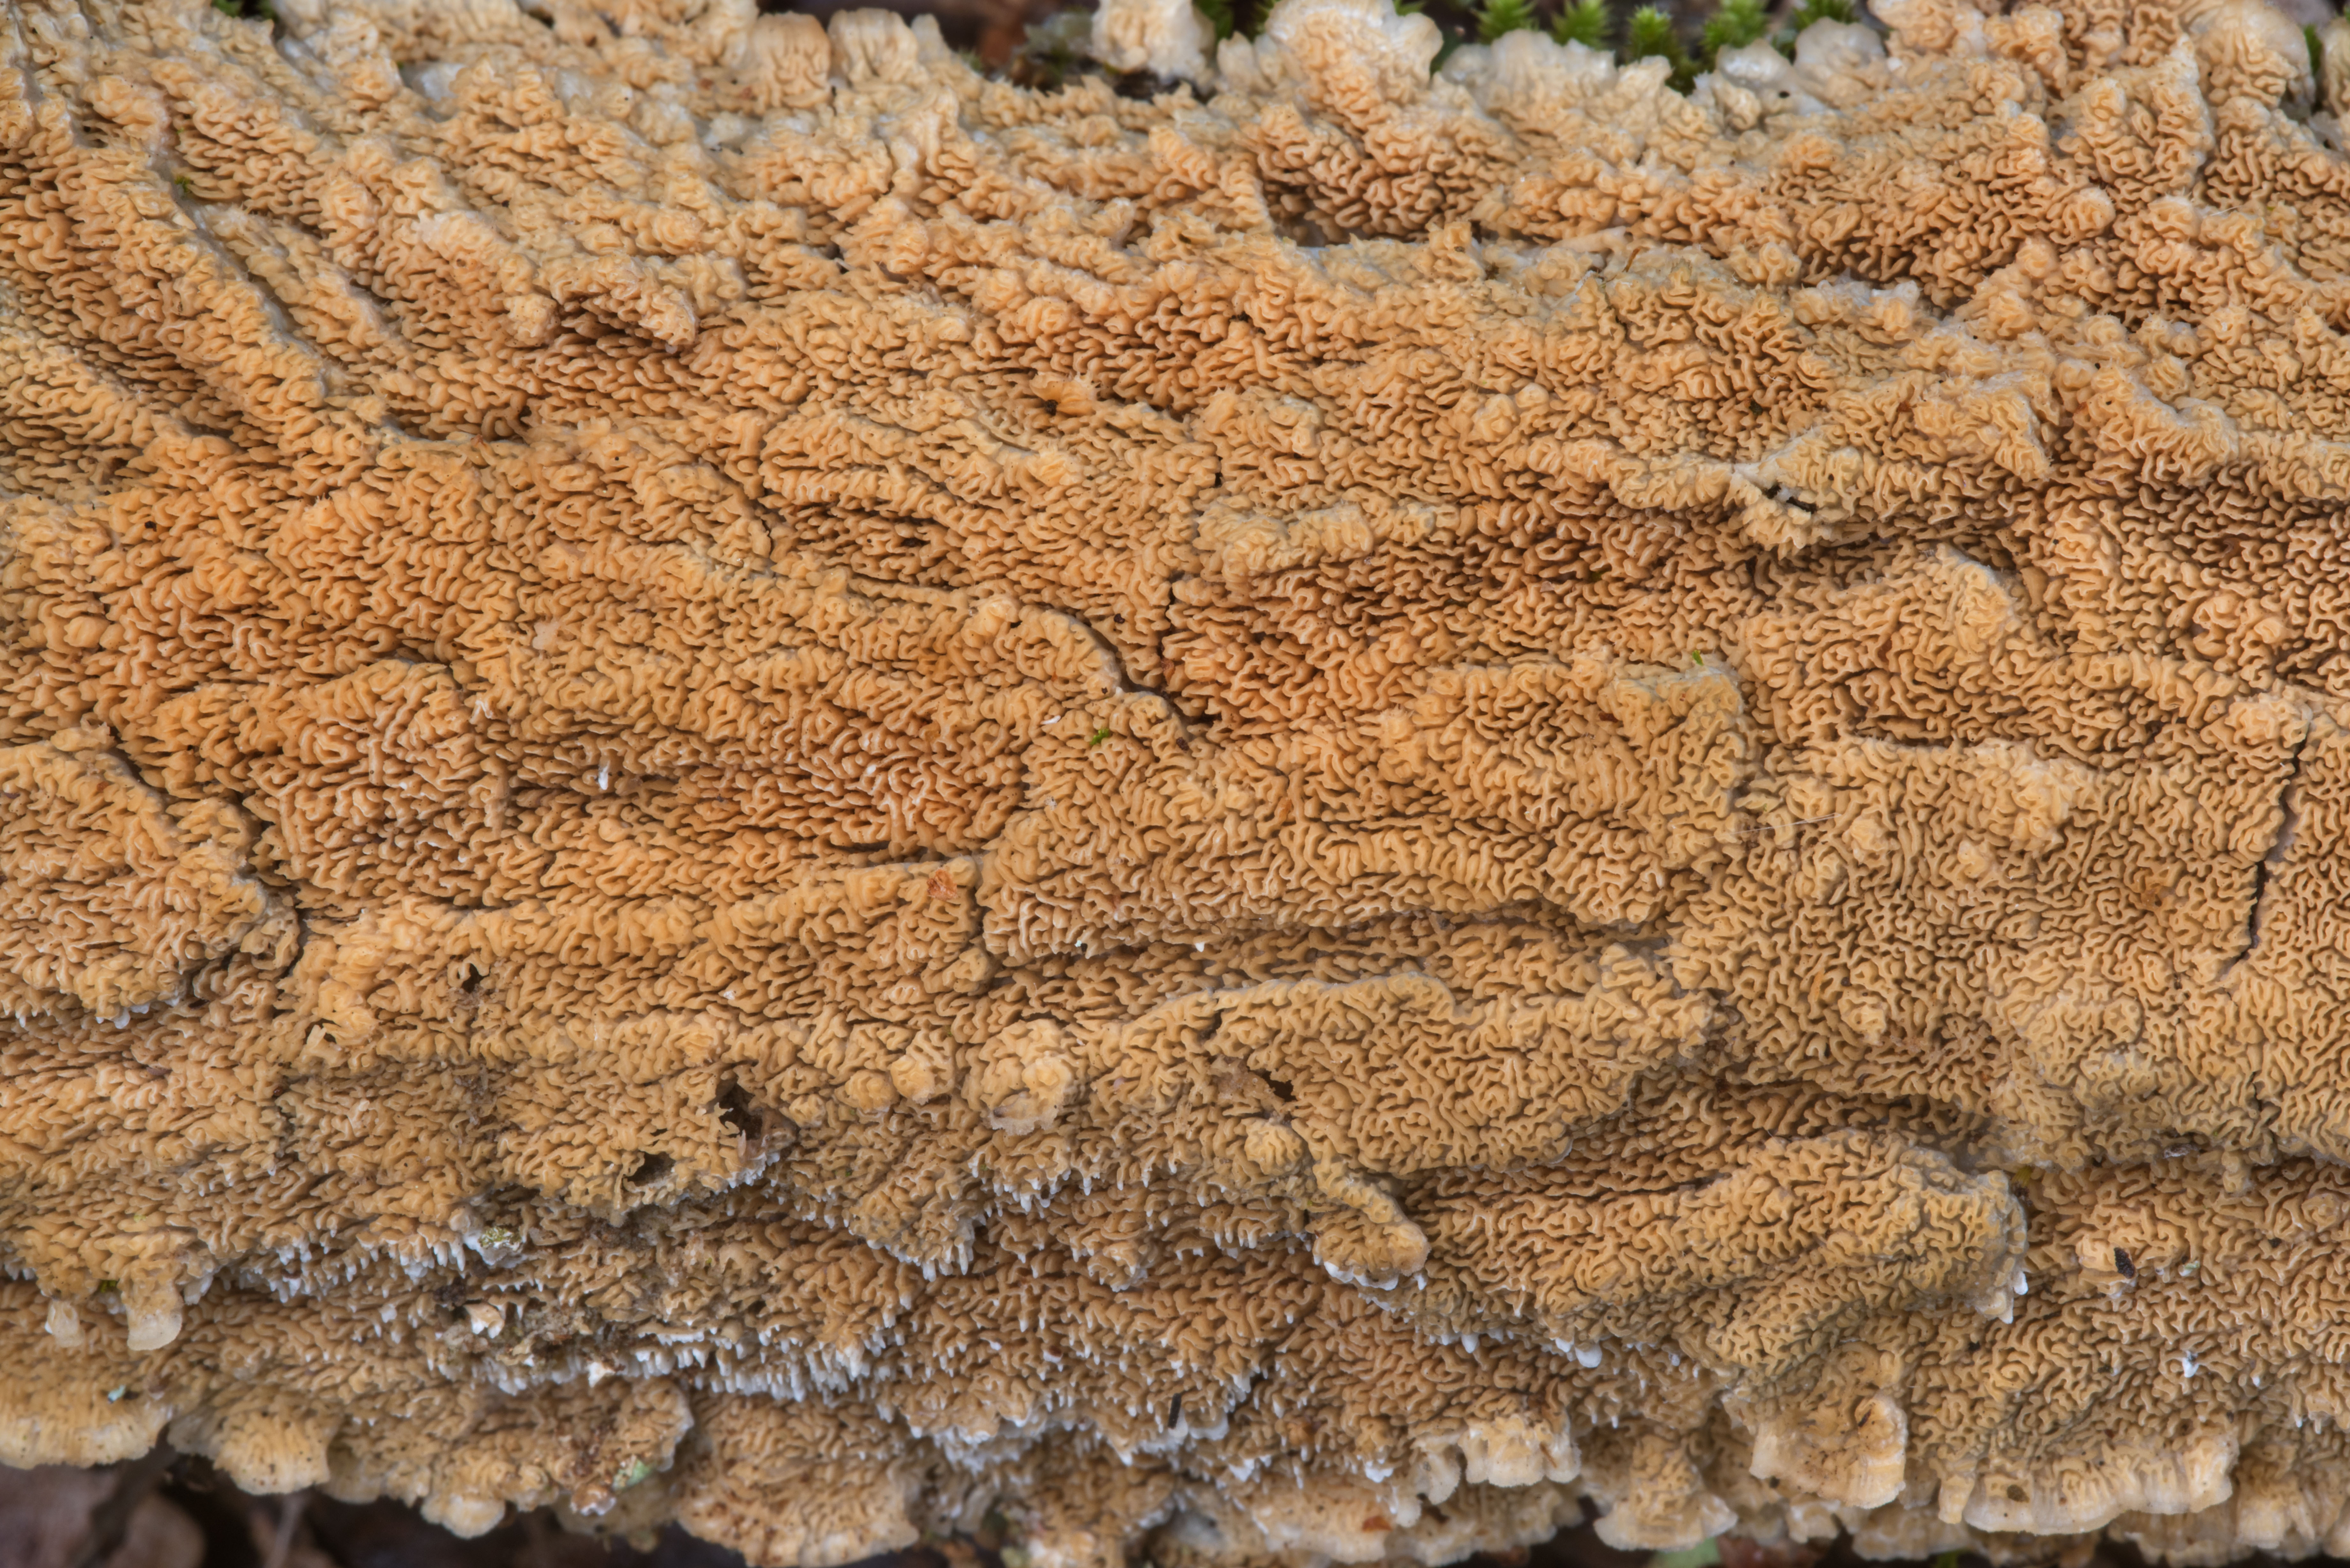 Photo 2245-07: Porous crust fungus on bark of a fallen oak branch in ...